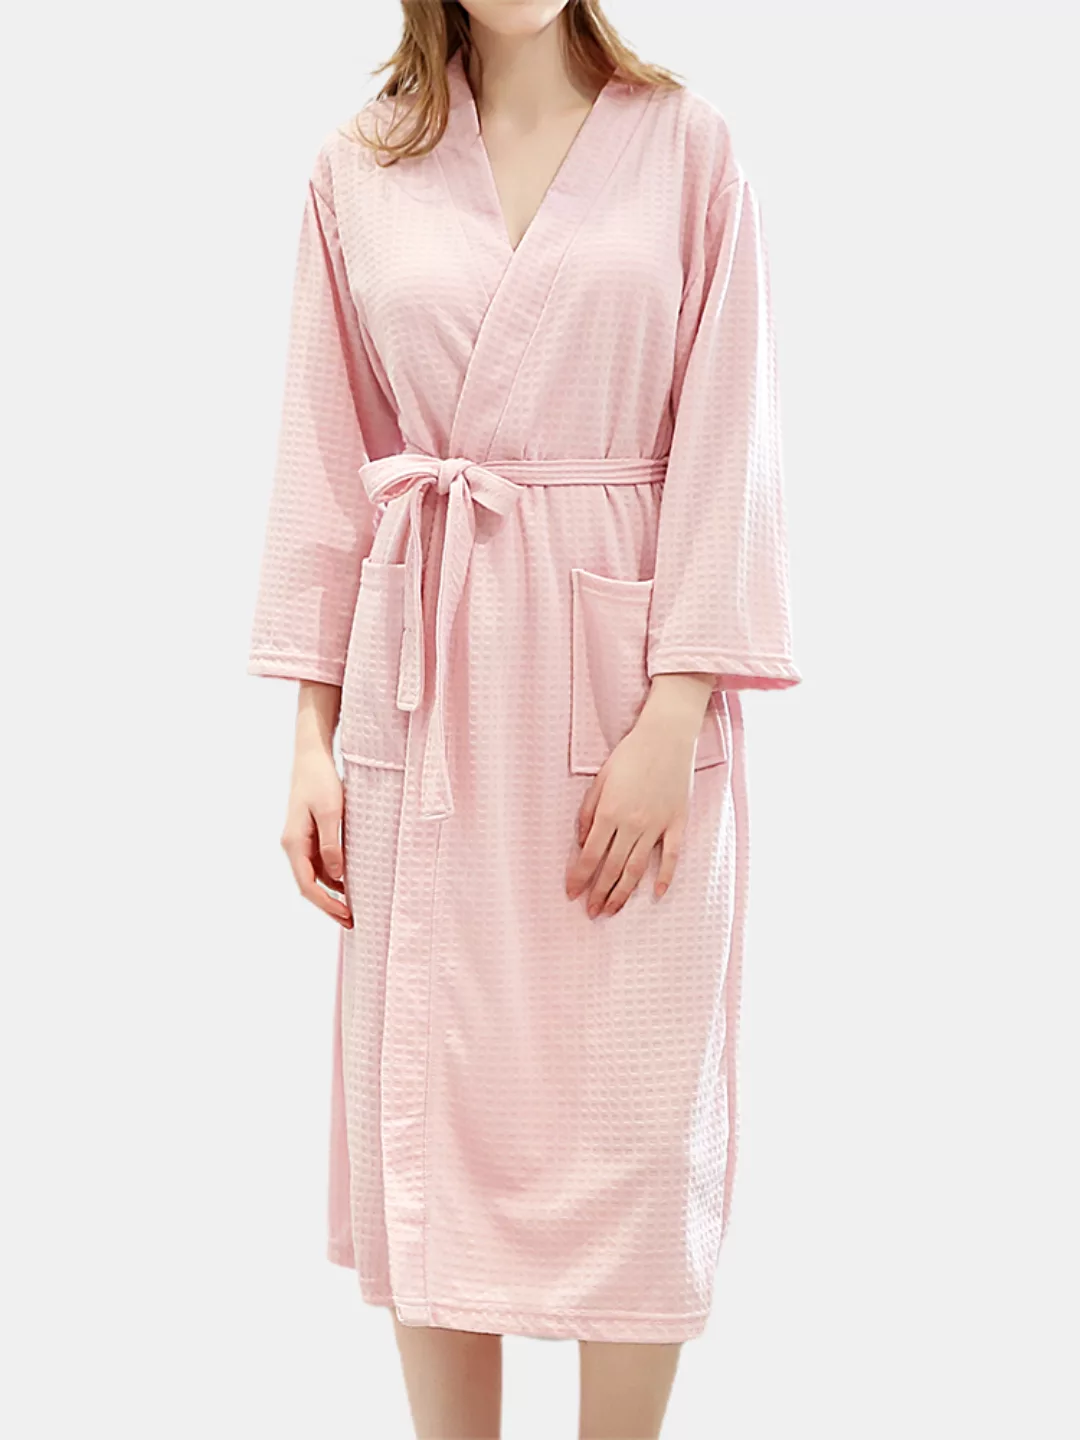 Damen Reine Farbe Waffel V-Ausschnitt Doppeltaschen Roben Pyjama Mit Gürtel günstig online kaufen